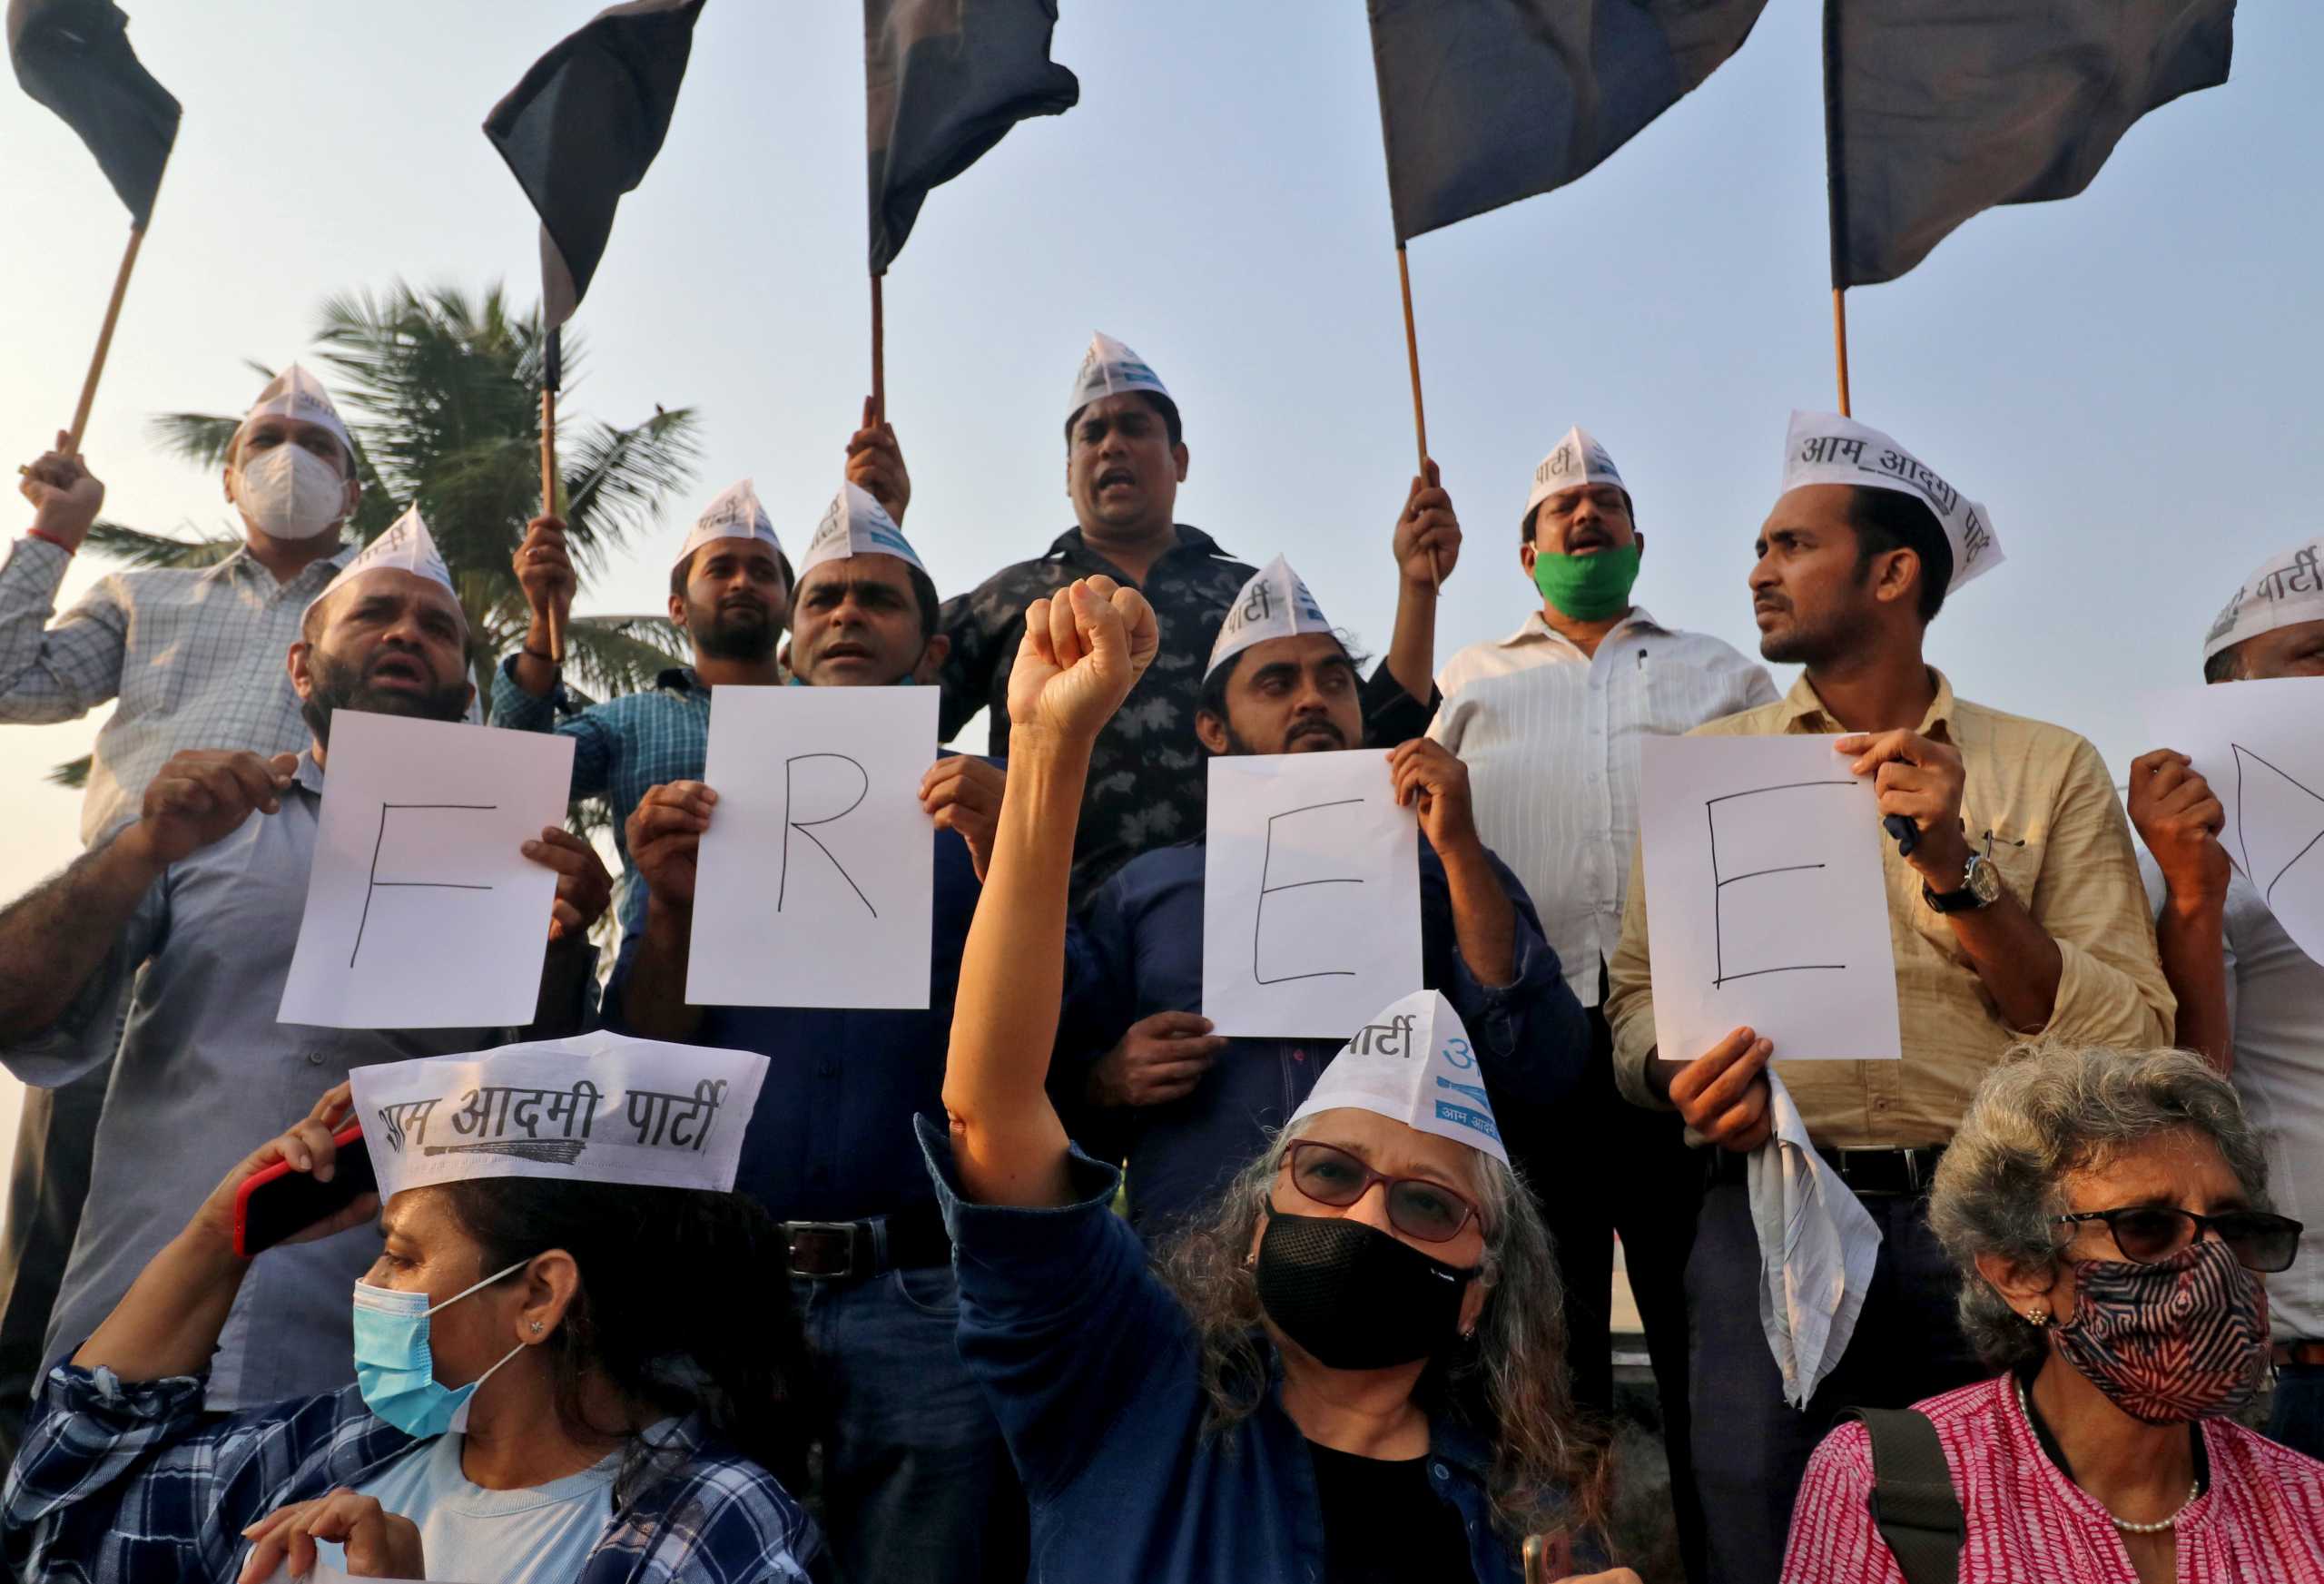 Ινδία: Κατακραυγή για την σύλληψη ακτιβίστριας που συνδέεται με το κίνημα της Γκρέτα Τούνμπεργκ